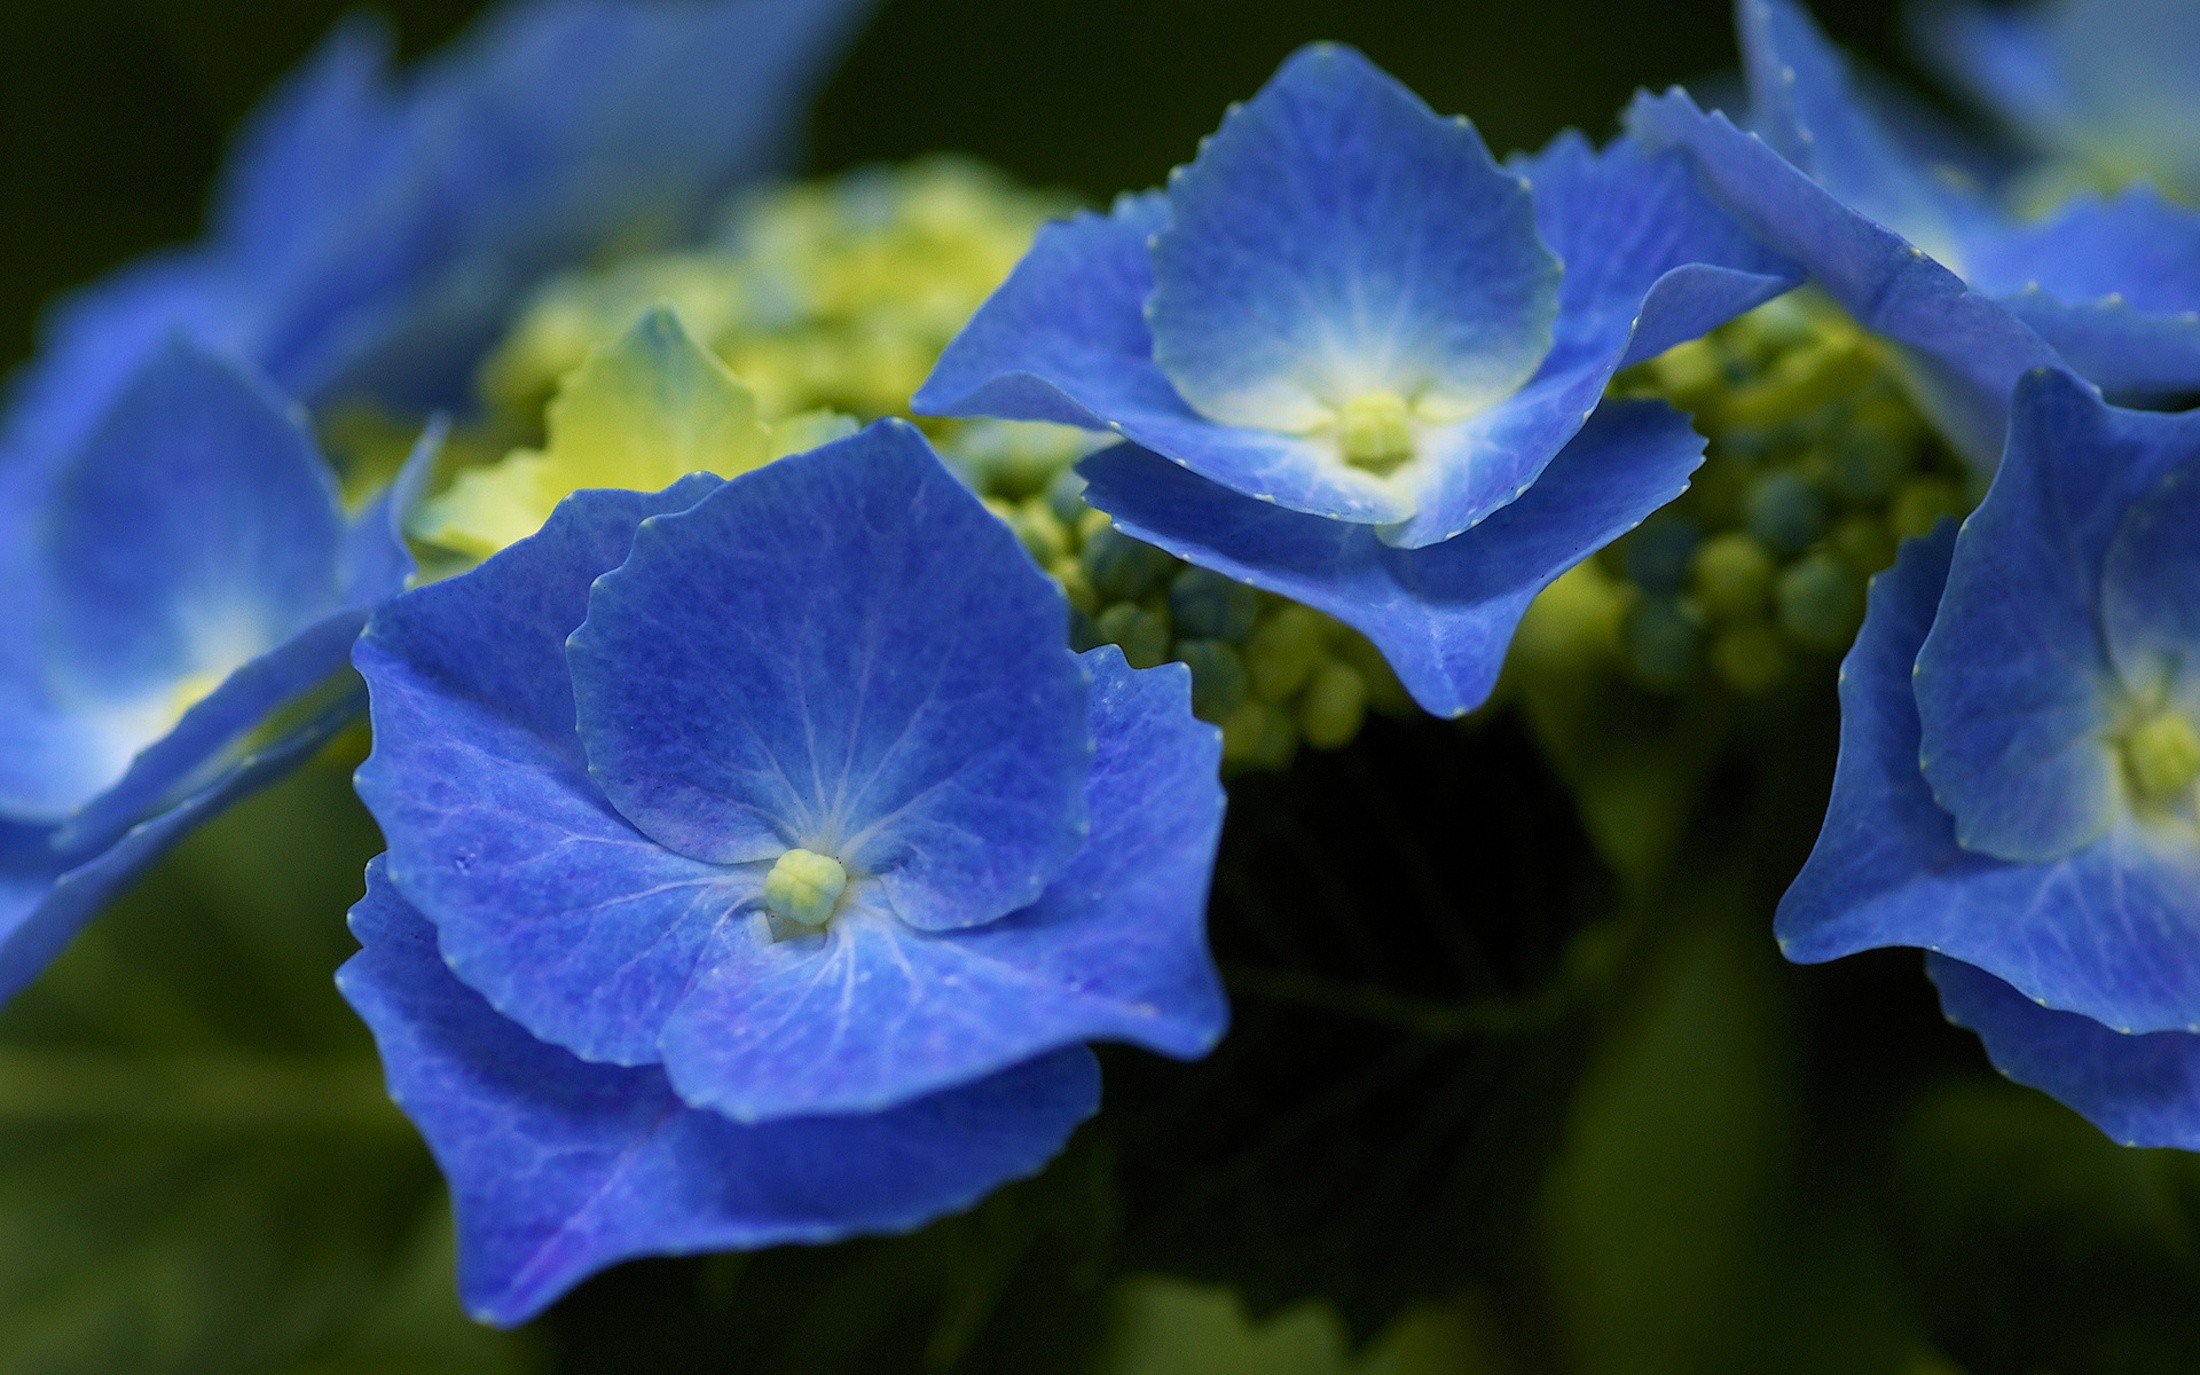 General 2200x1375 flowers blue flowers plants hydrangea closeup macro